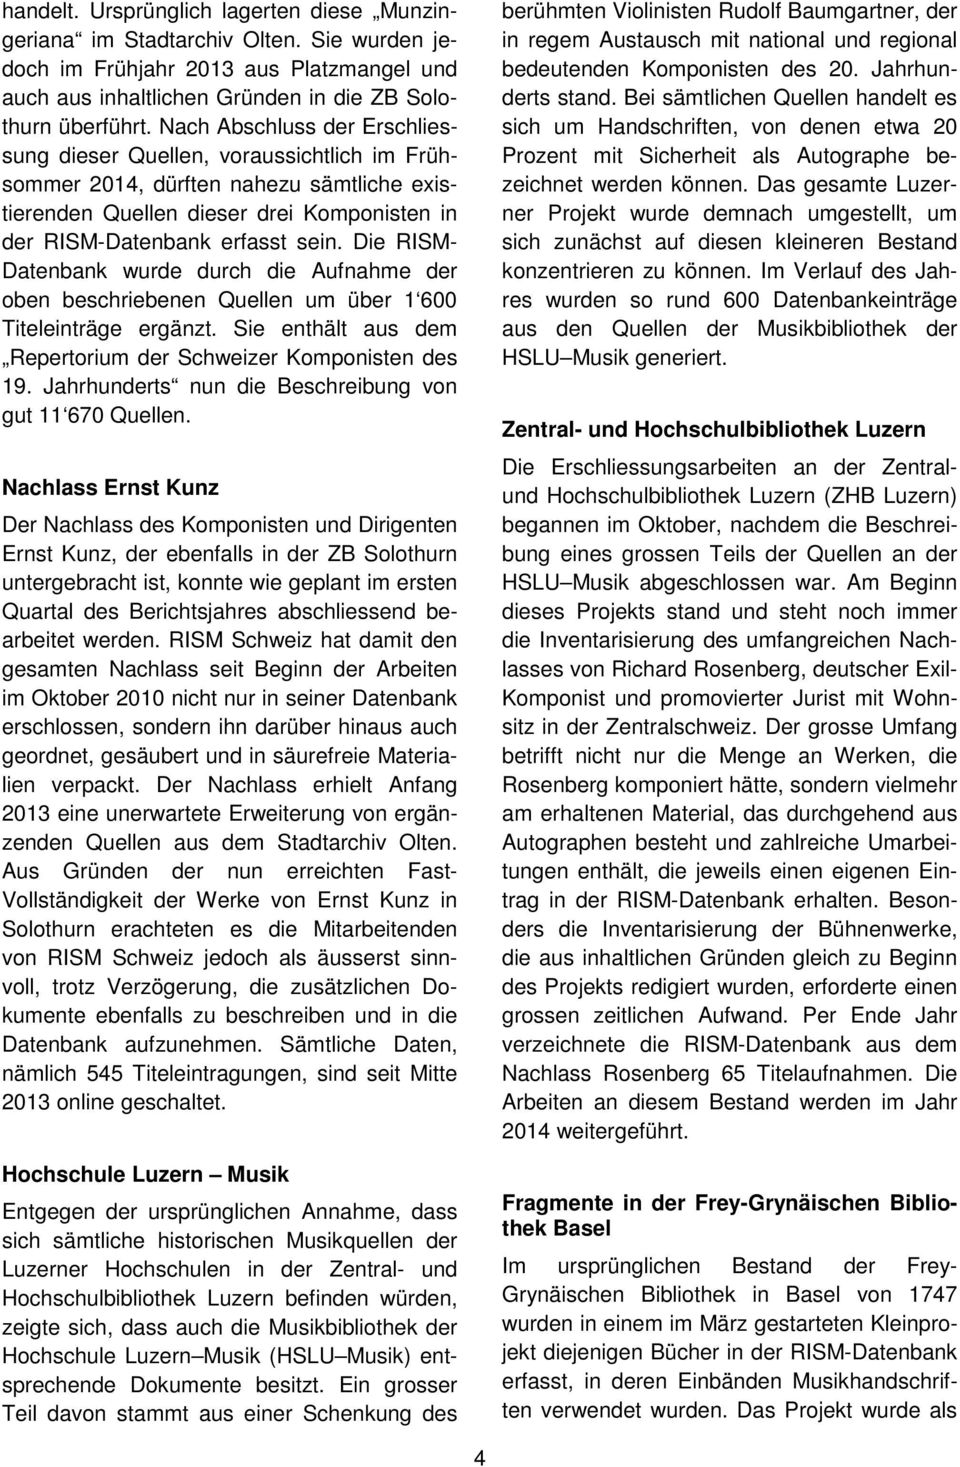 Die RISM- Datenbank wurde durch die Aufnahme der oben beschriebenen Quellen um über 1 600 Titeleinträge ergänzt. Sie enthält aus dem Repertorium der Schweizer Komponisten des 19.